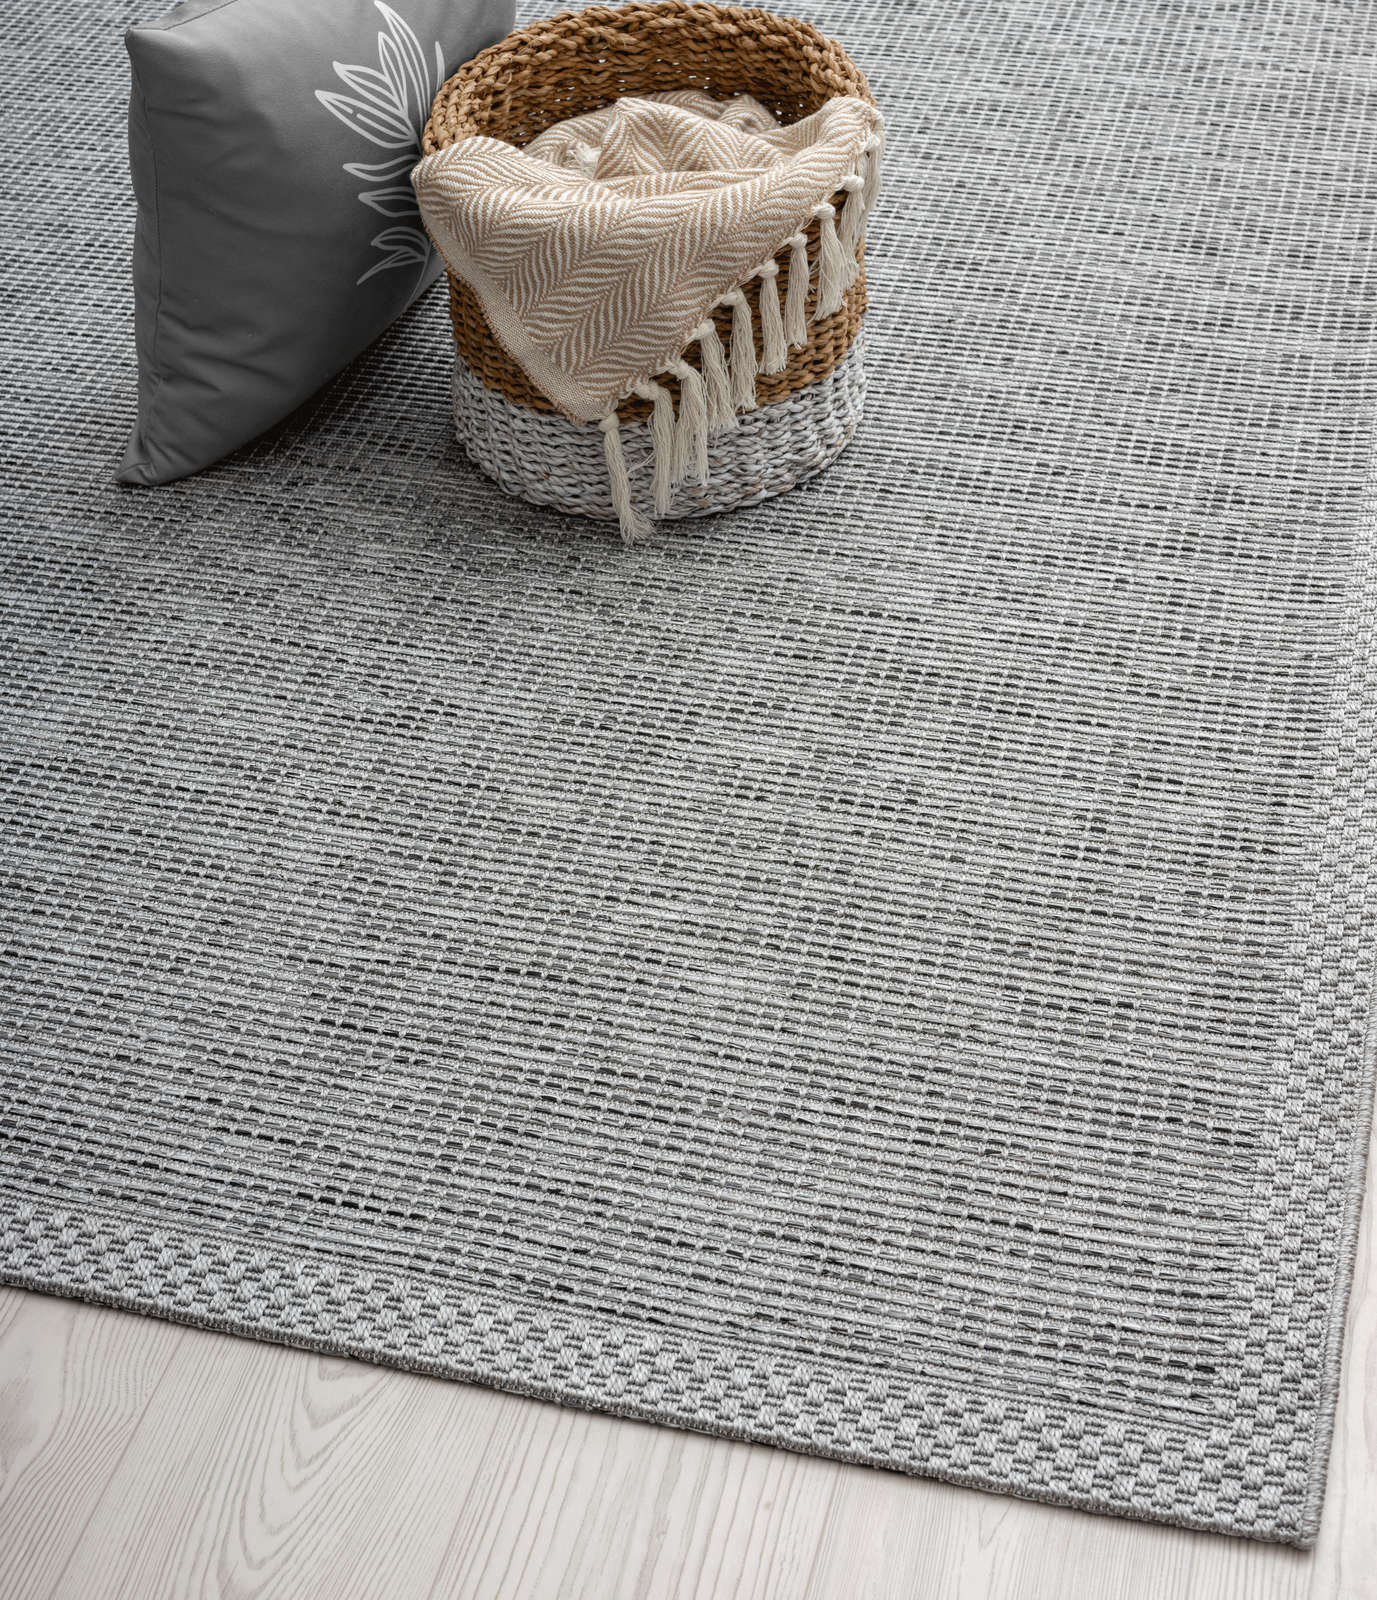             Eenvoudig vloerkleed voor buiten in grijs - 200 x 140 cm
        